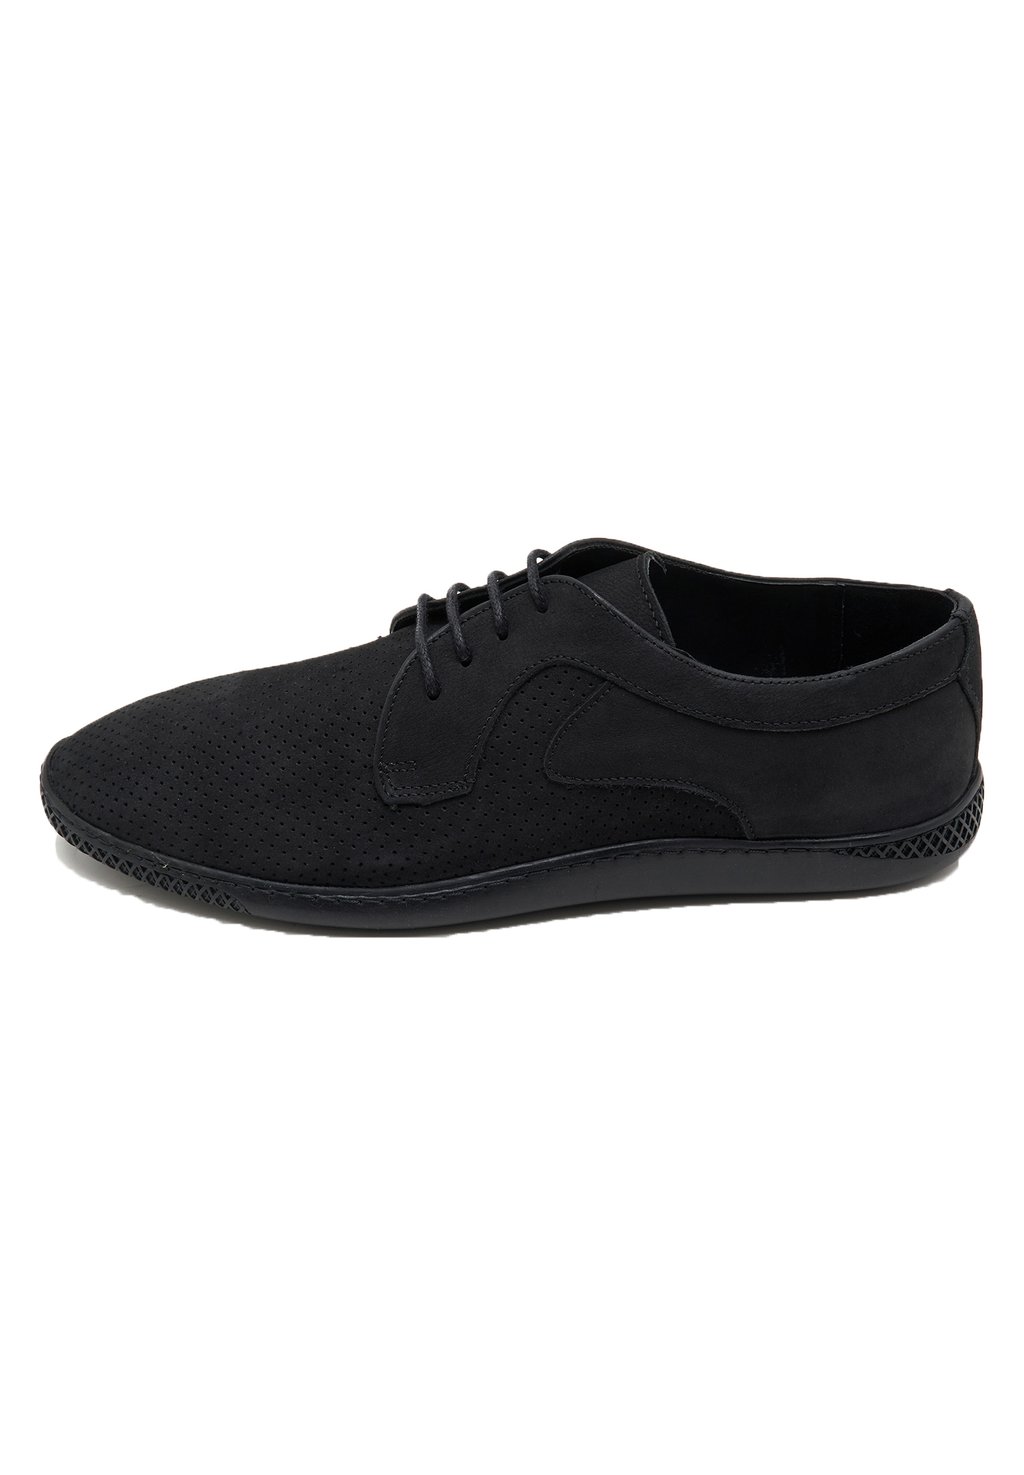 Спортивные туфли на шнуровке DESA, цвет black спортивные туфли на шнуровке desa цвет dark blue